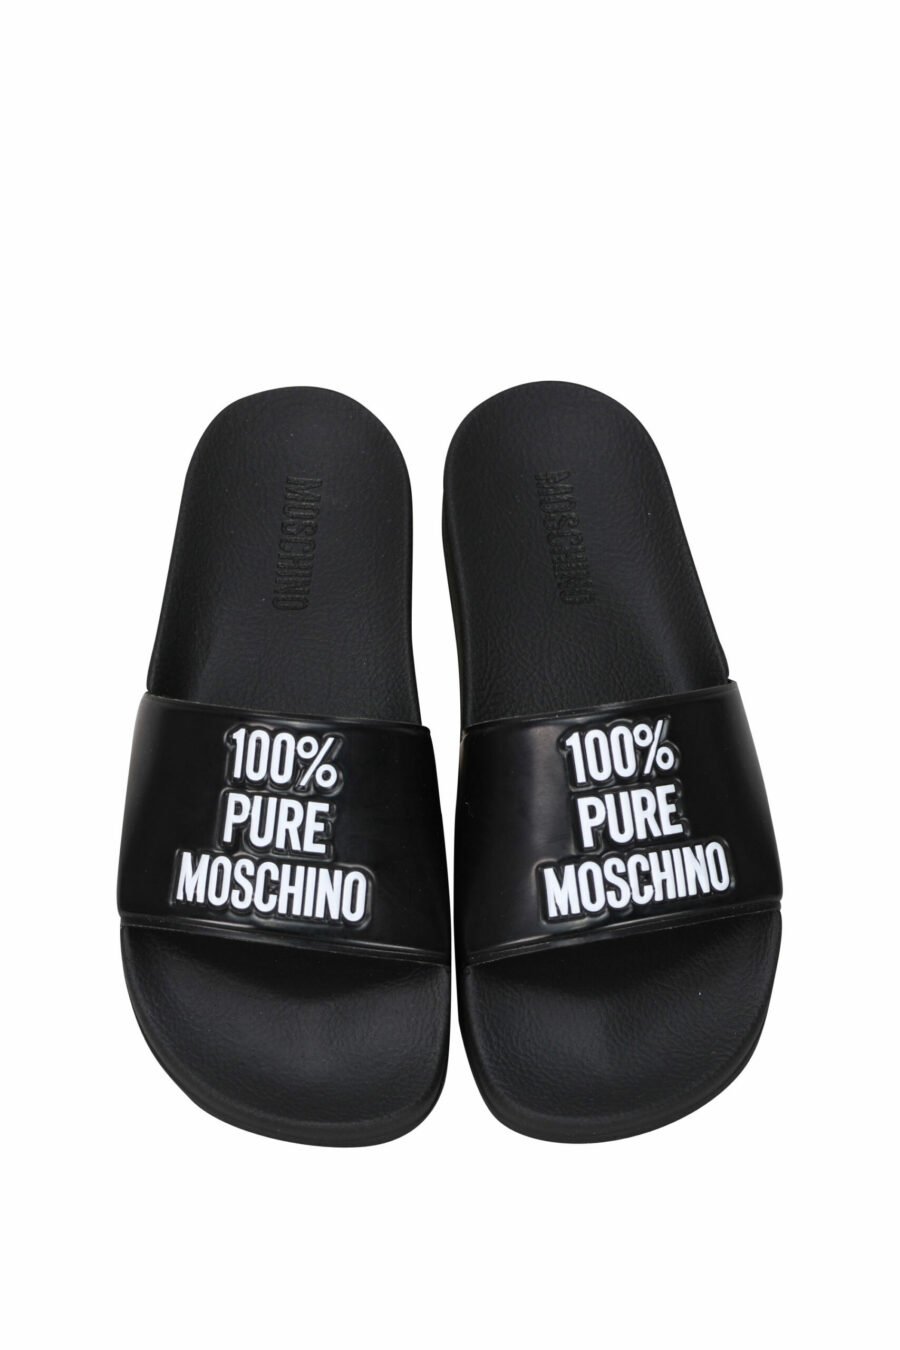 Schwarze Flip Flops mit Logo "100% pure moschino" - 8054388527972 4 skaliert